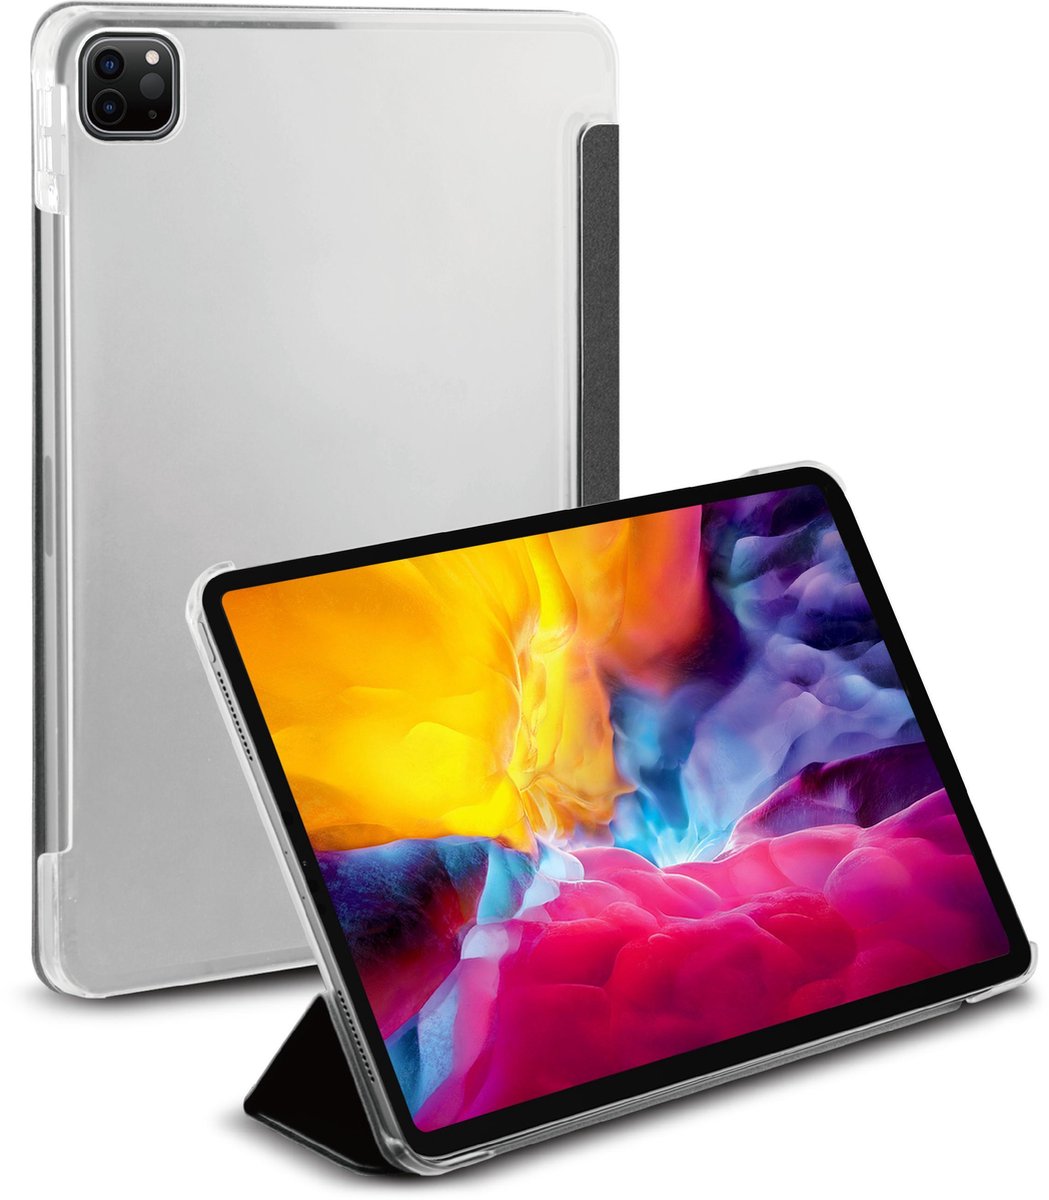 BeHello iPad Pro 11 (2020) Tablet Hoes met Smart Cover Zwart